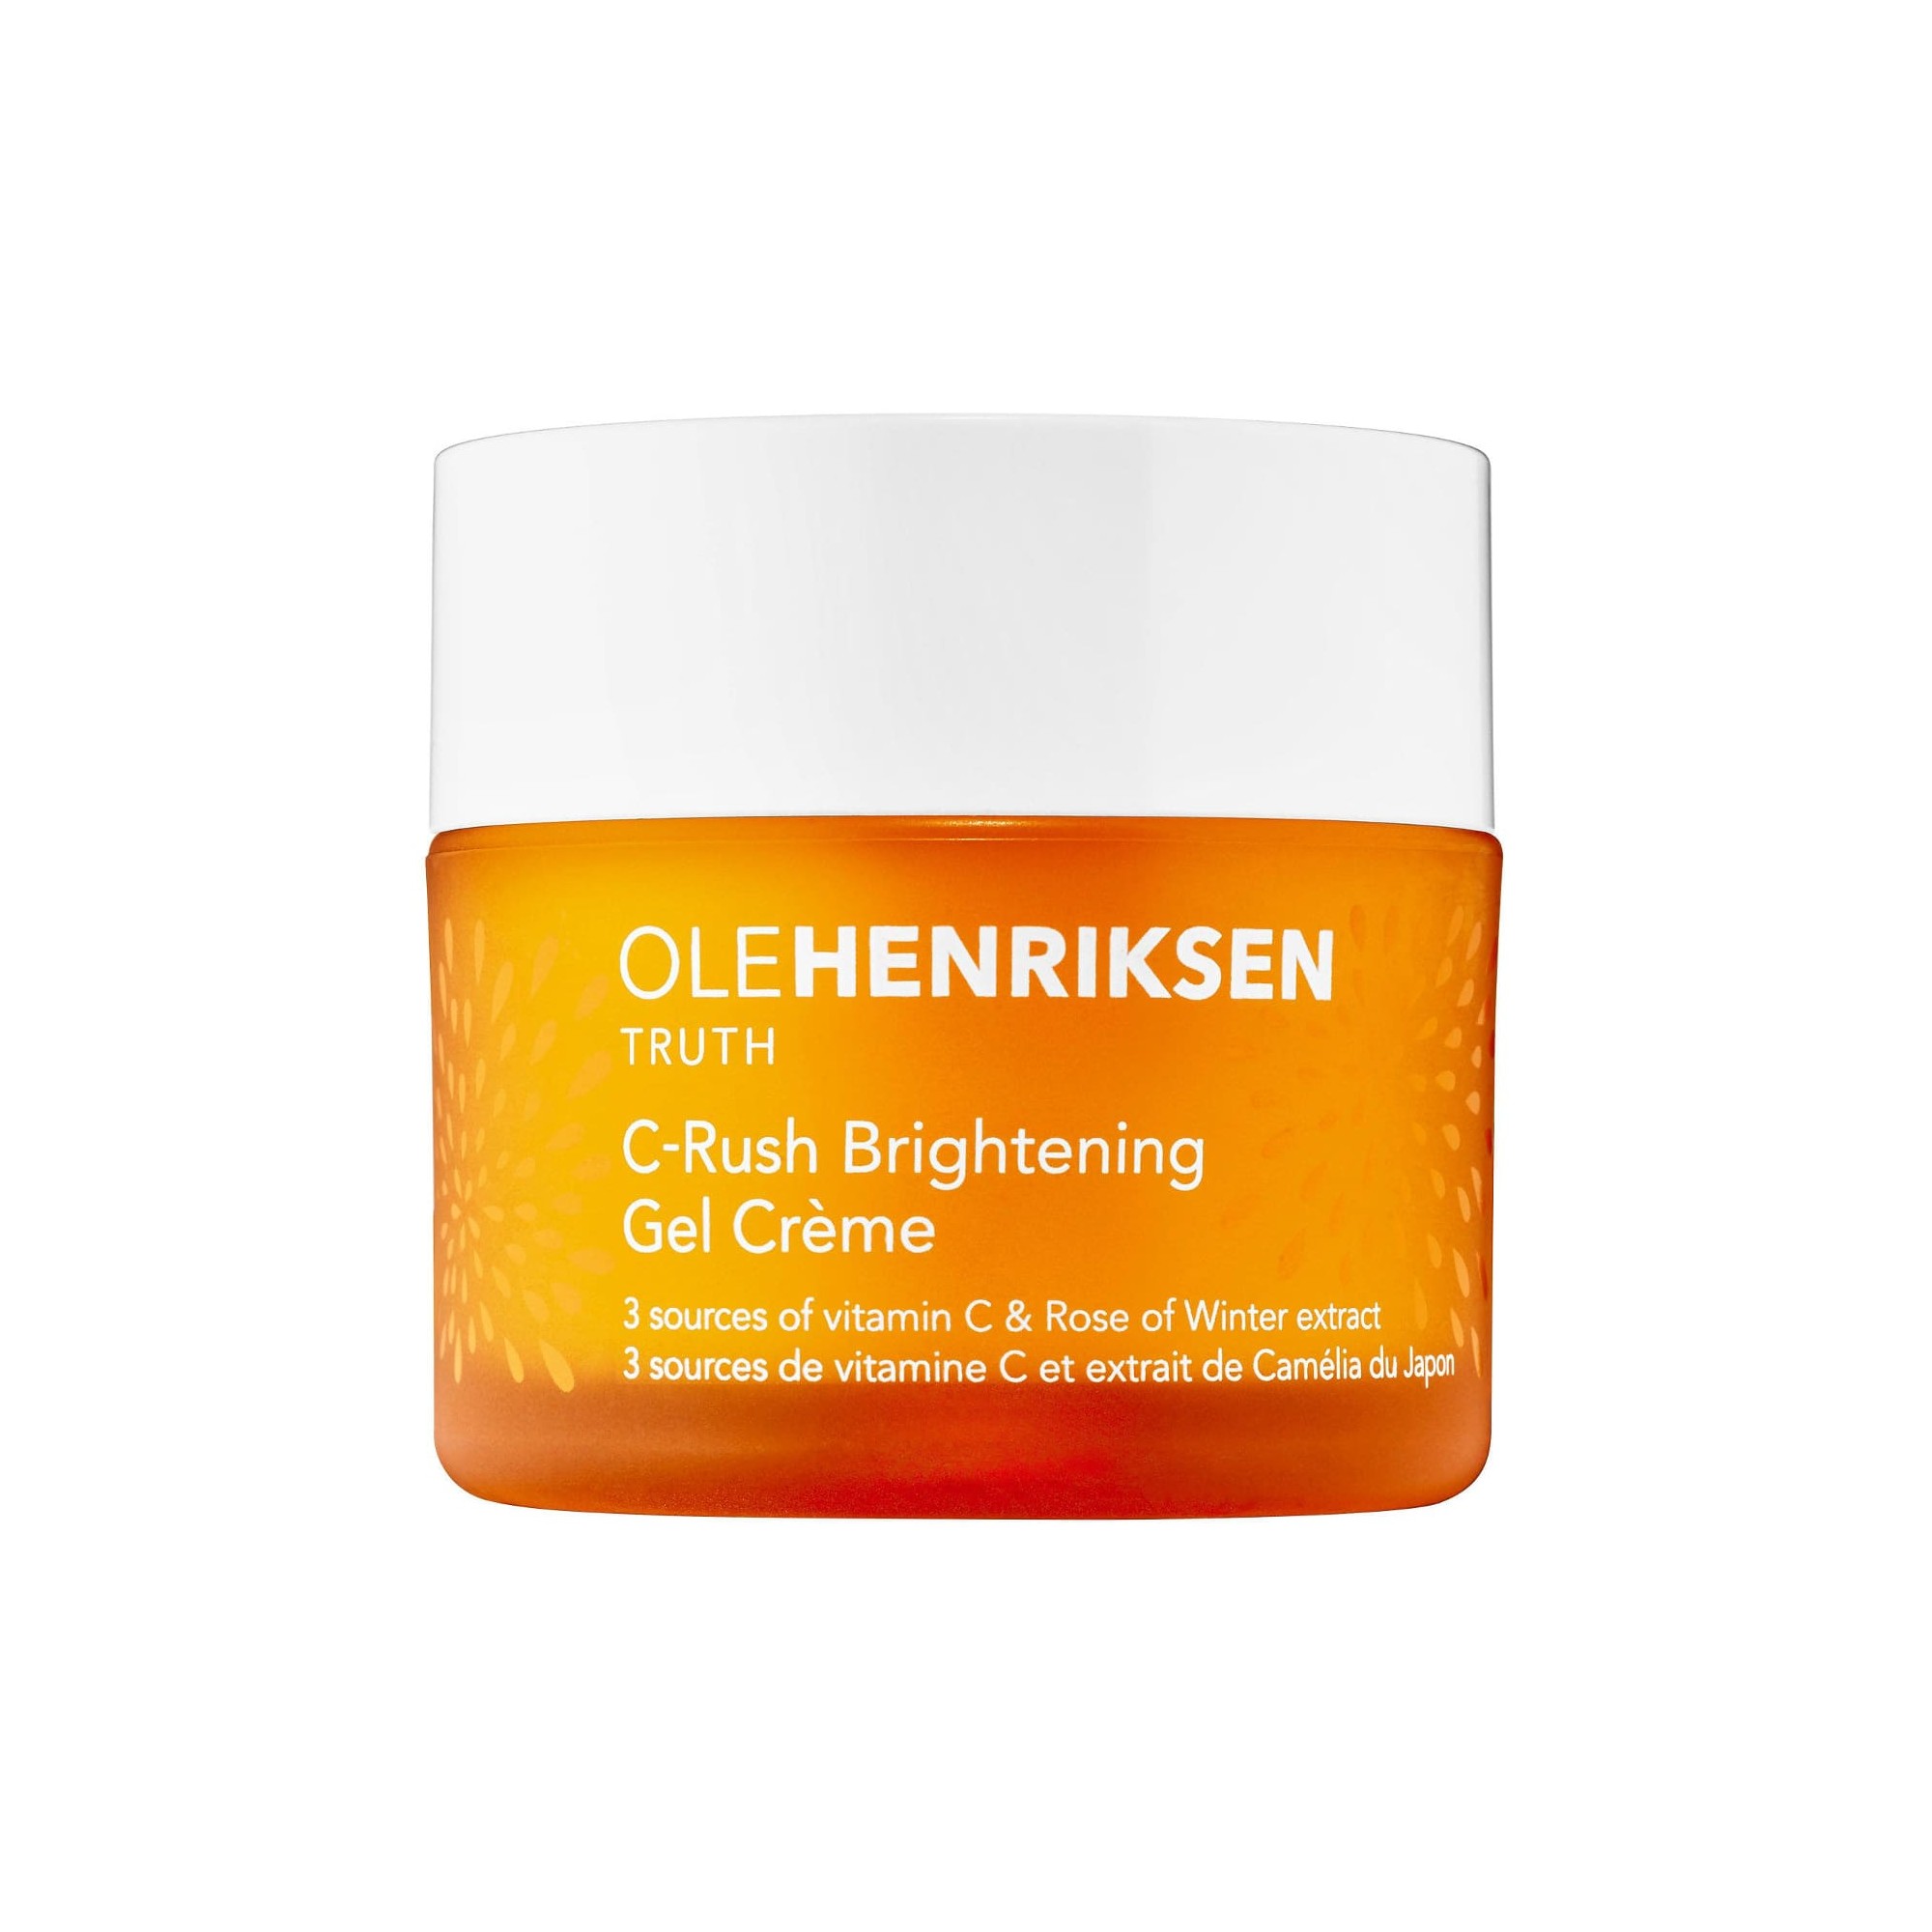 Ole Henriksen C-Rush Brightening Gel Crème